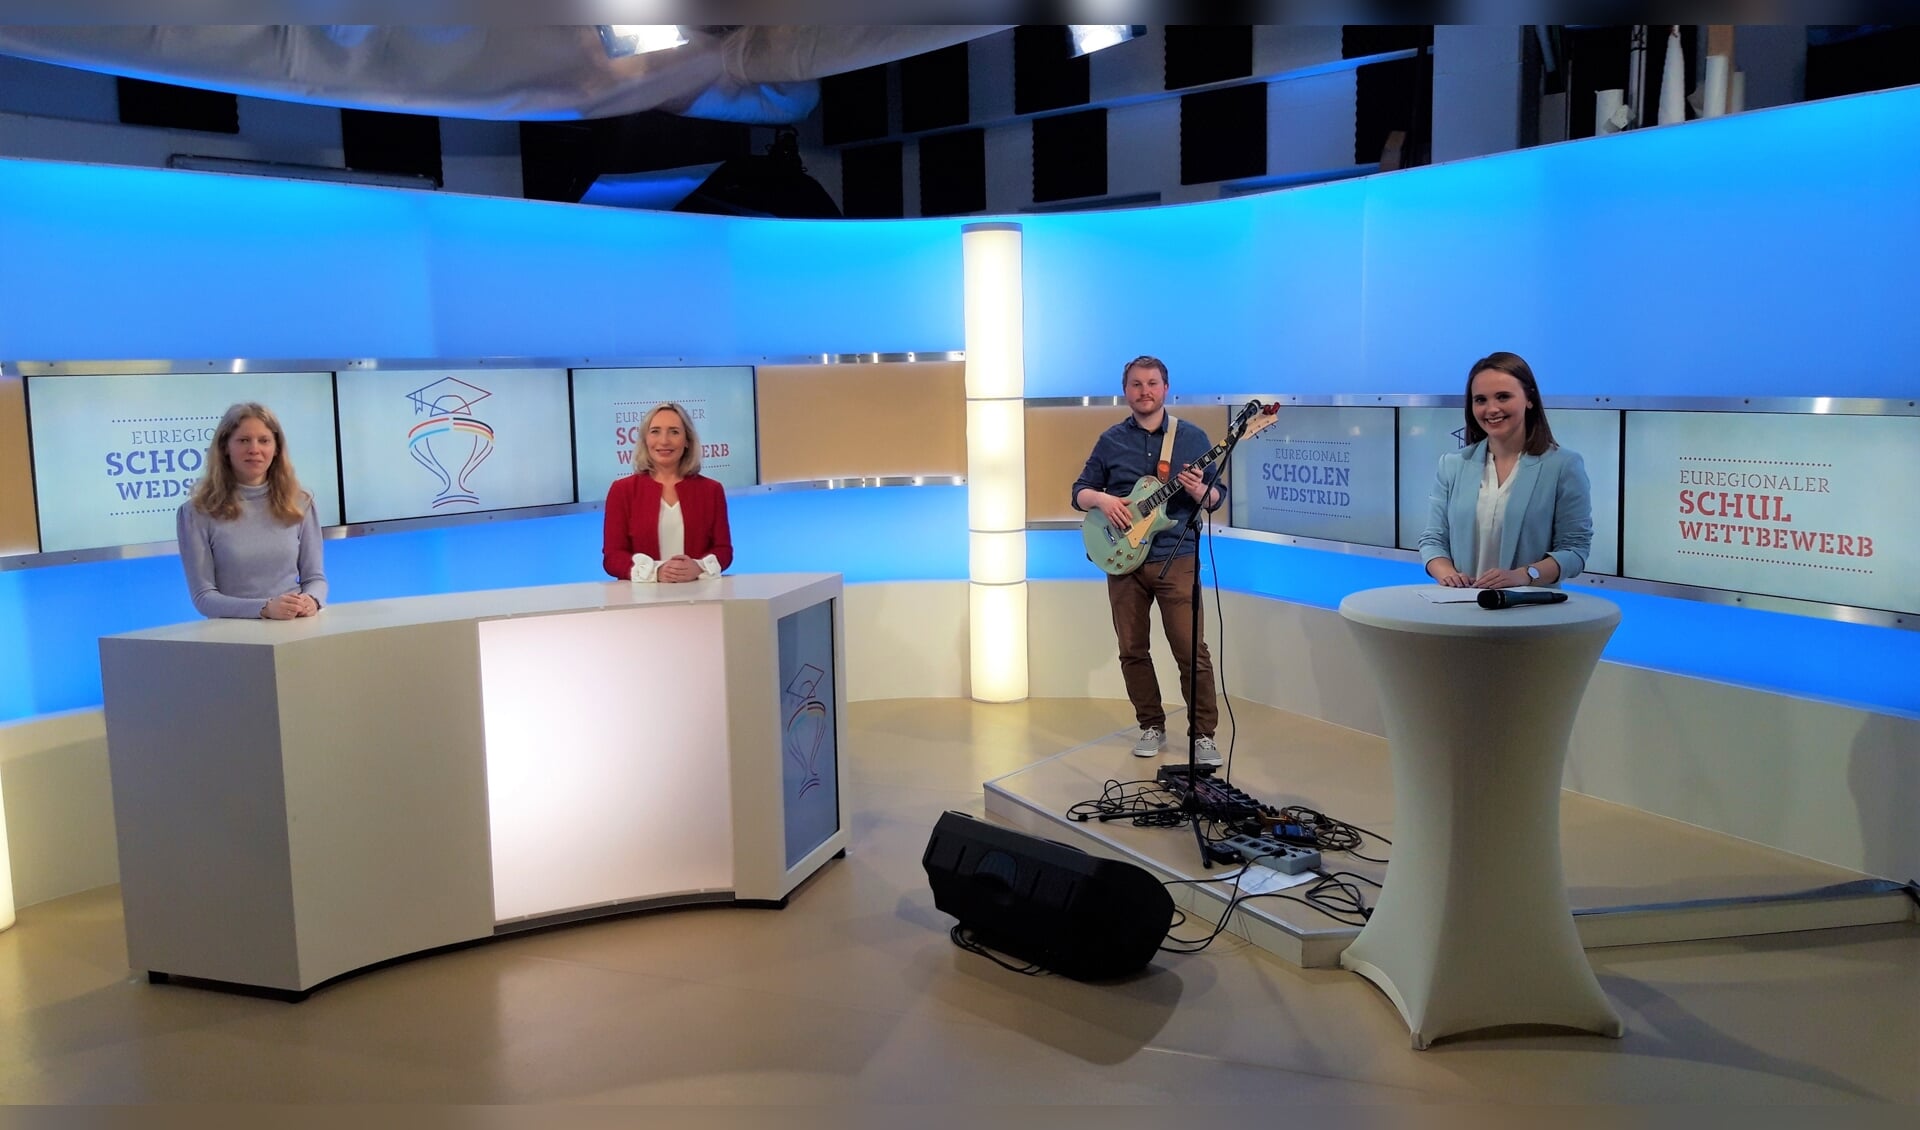 De prijsuitreiking van de Euregionale Scholenwedstrijd vond plaats in een televisiestudio in Duisburg. V.l.n.r. Heidi de Ruiter, Margot Ribberink, August Klar en Sina Kuipers.